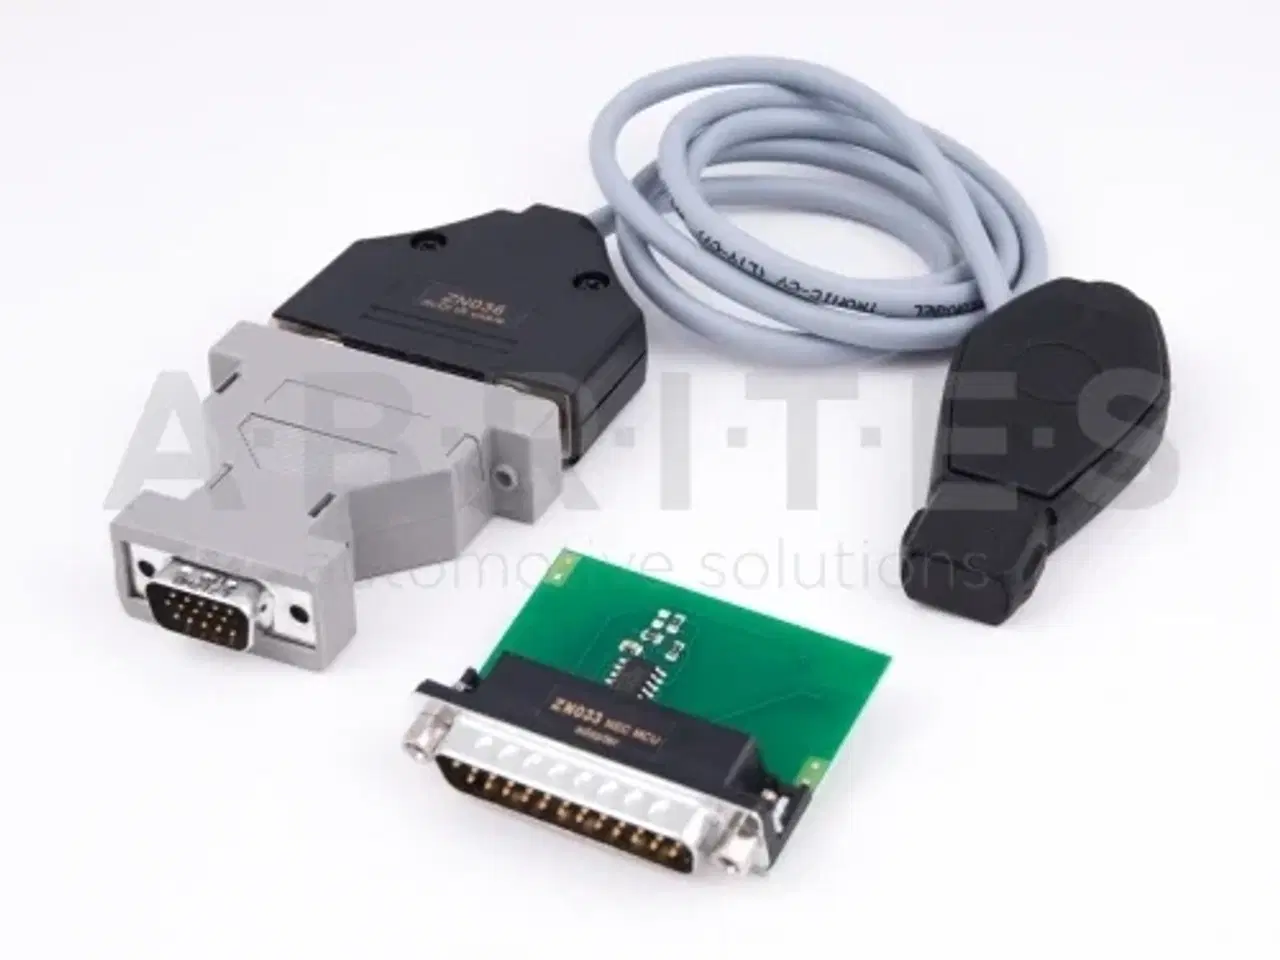 Billede 3 - UDSTYR TIL AVDI køb ekstra udstyr til din AVDI her (hardware)